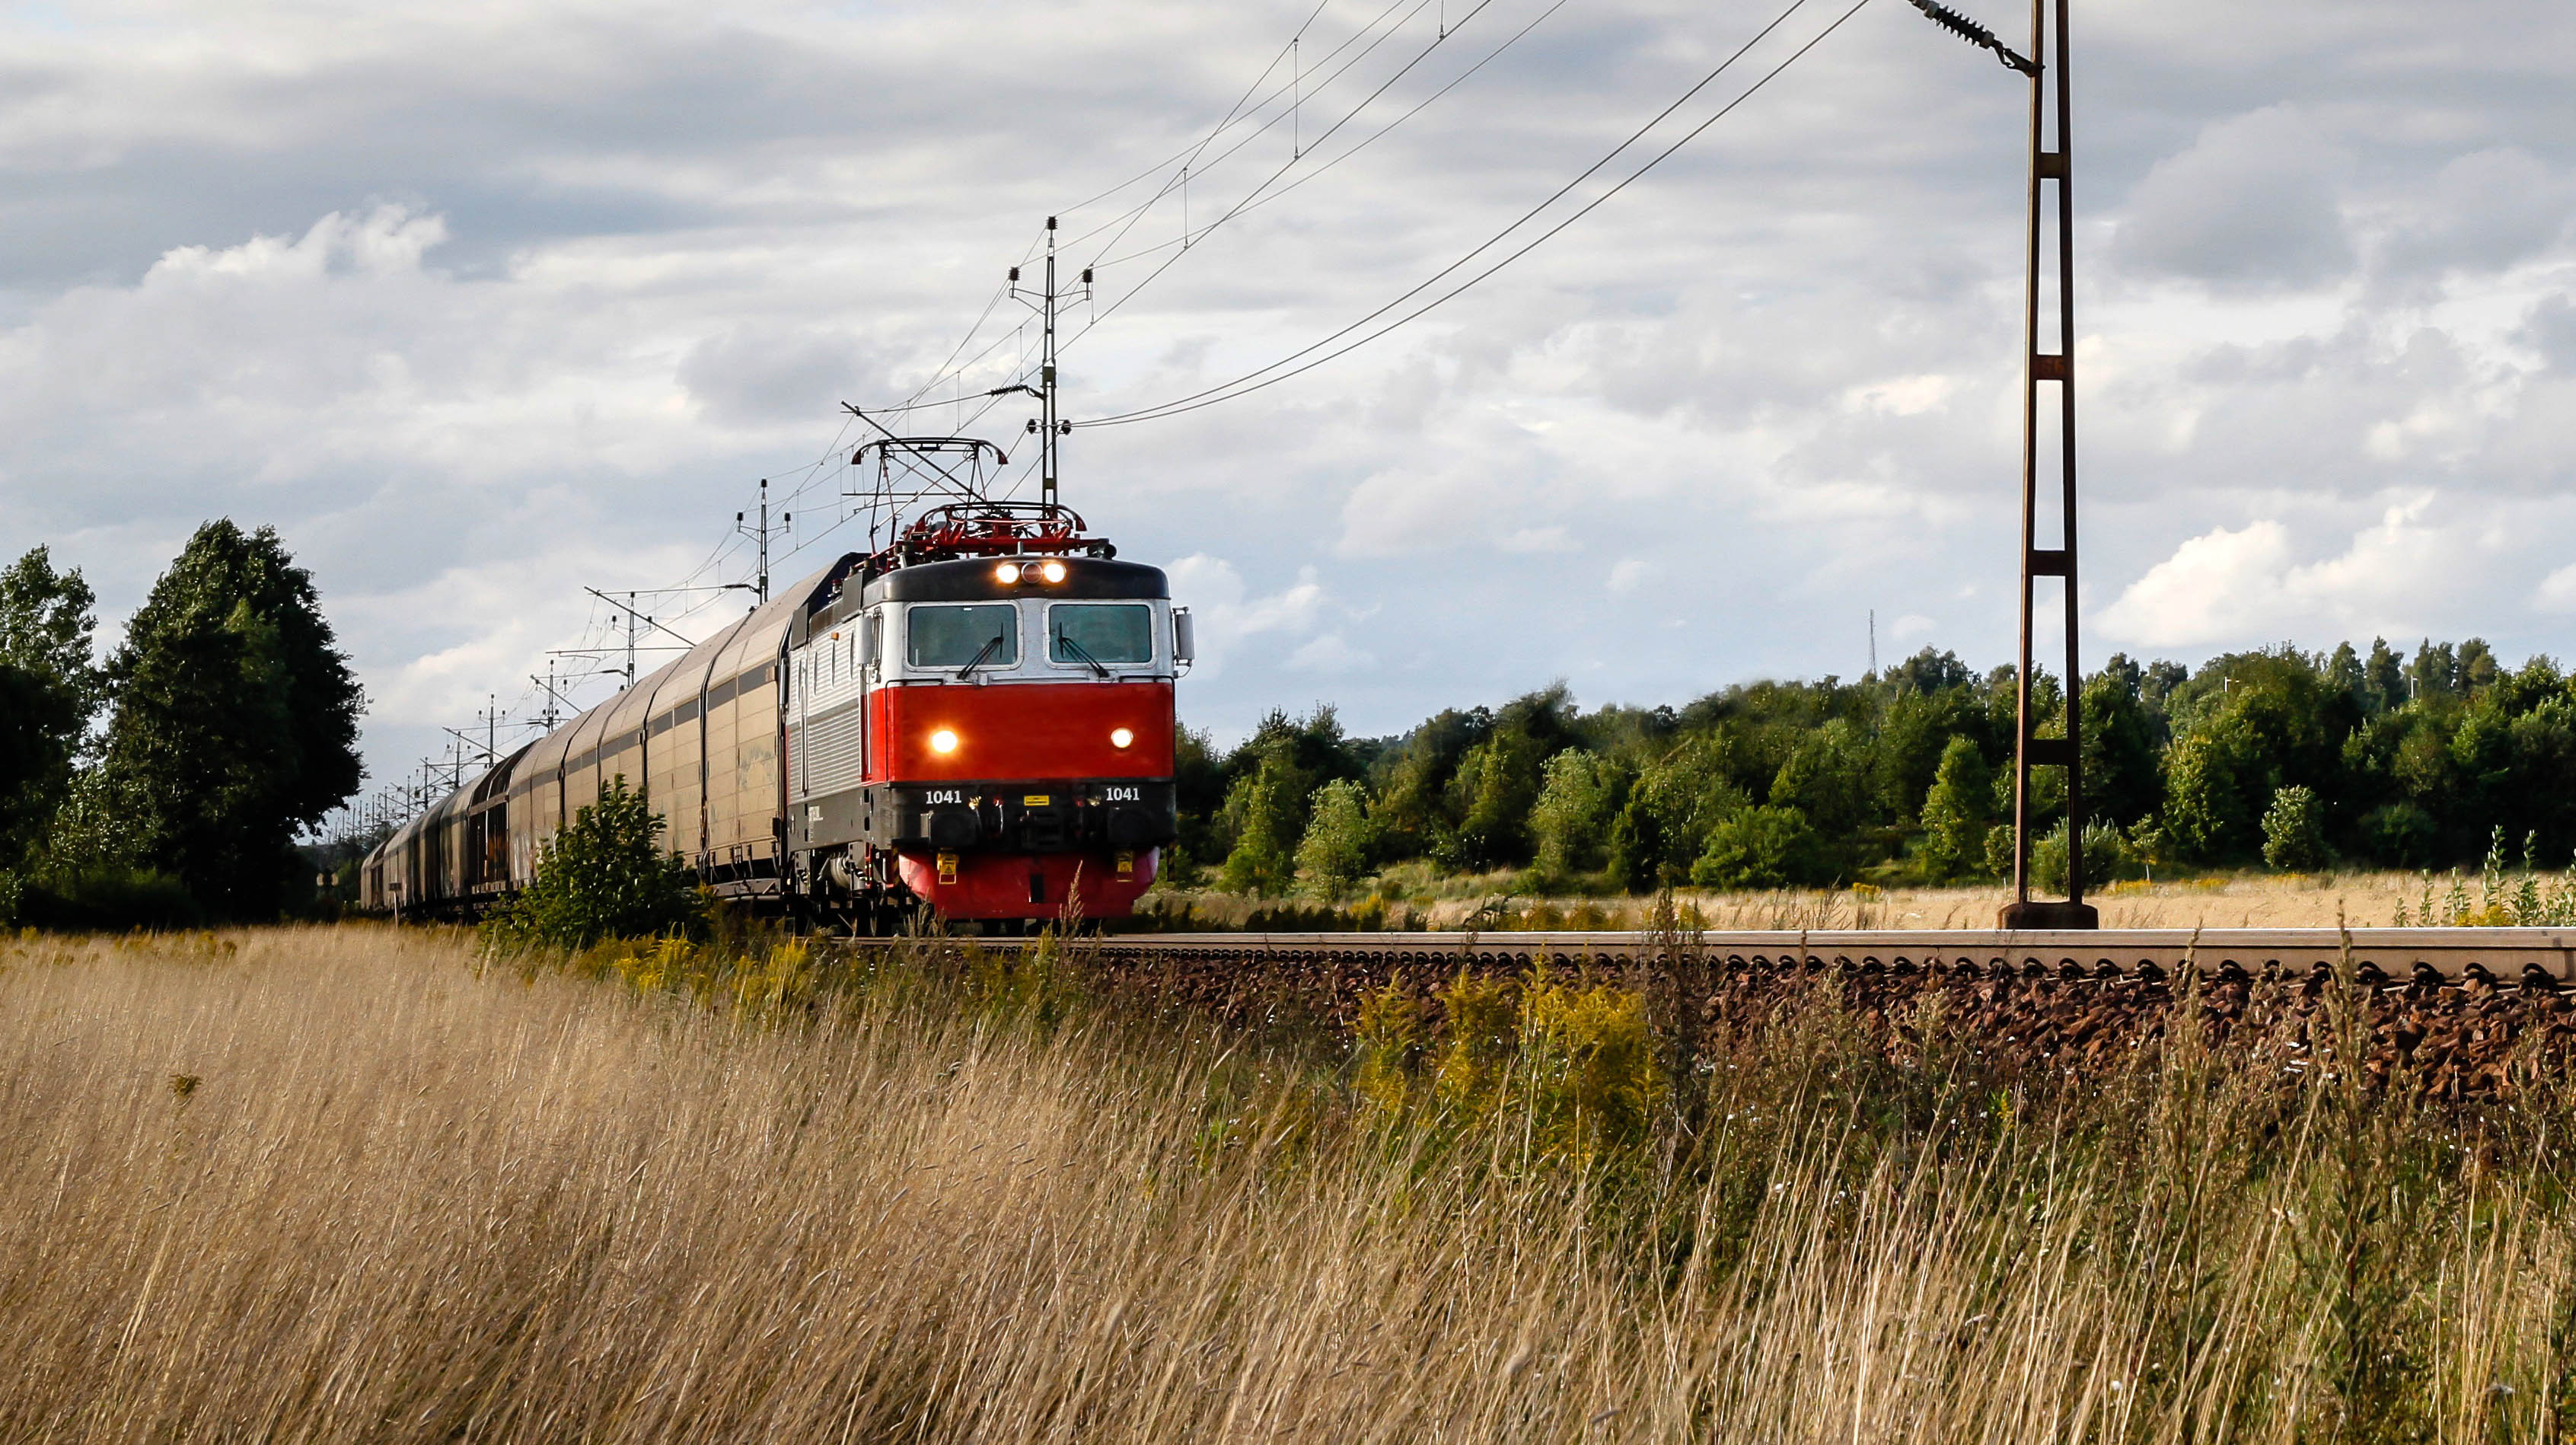 Train on rail in landscape